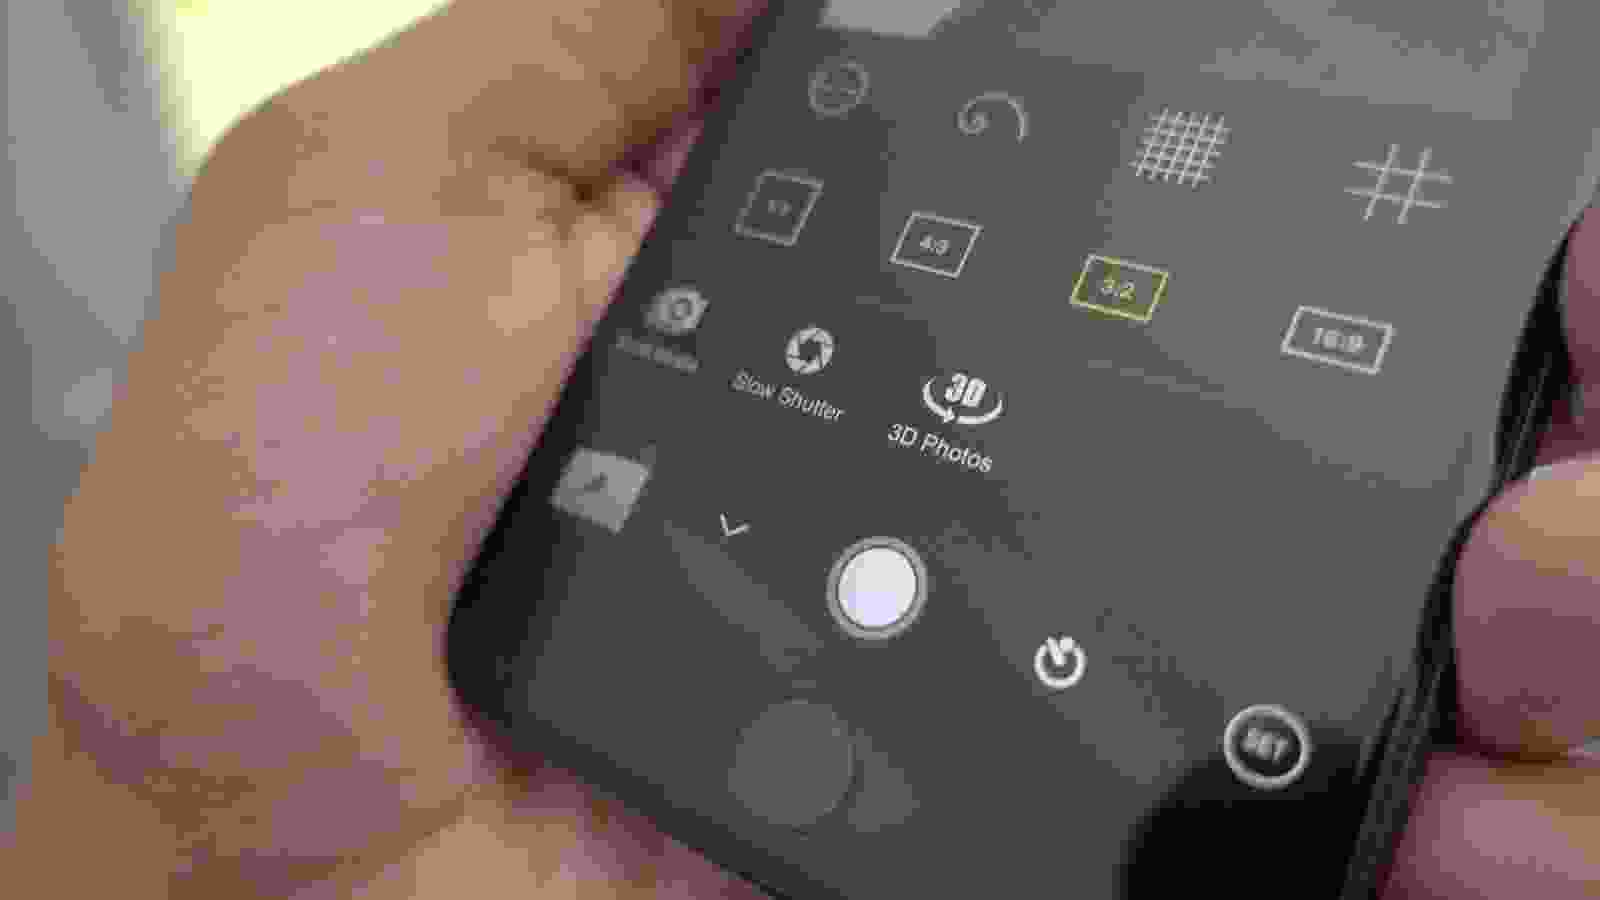 Với ProCam 4, chức năng chụp ảnh 3D trên iPhone 7 Plus sẽ trở thành điều dễ dàng hơn bao giờ hết. Với nhiều lựa chọn cài đặt linh hoạt, hãy tận dụng sức mạnh của chiếc điện thoại của bạn để tạo ra những bức ảnh 3D tuyệt vời.